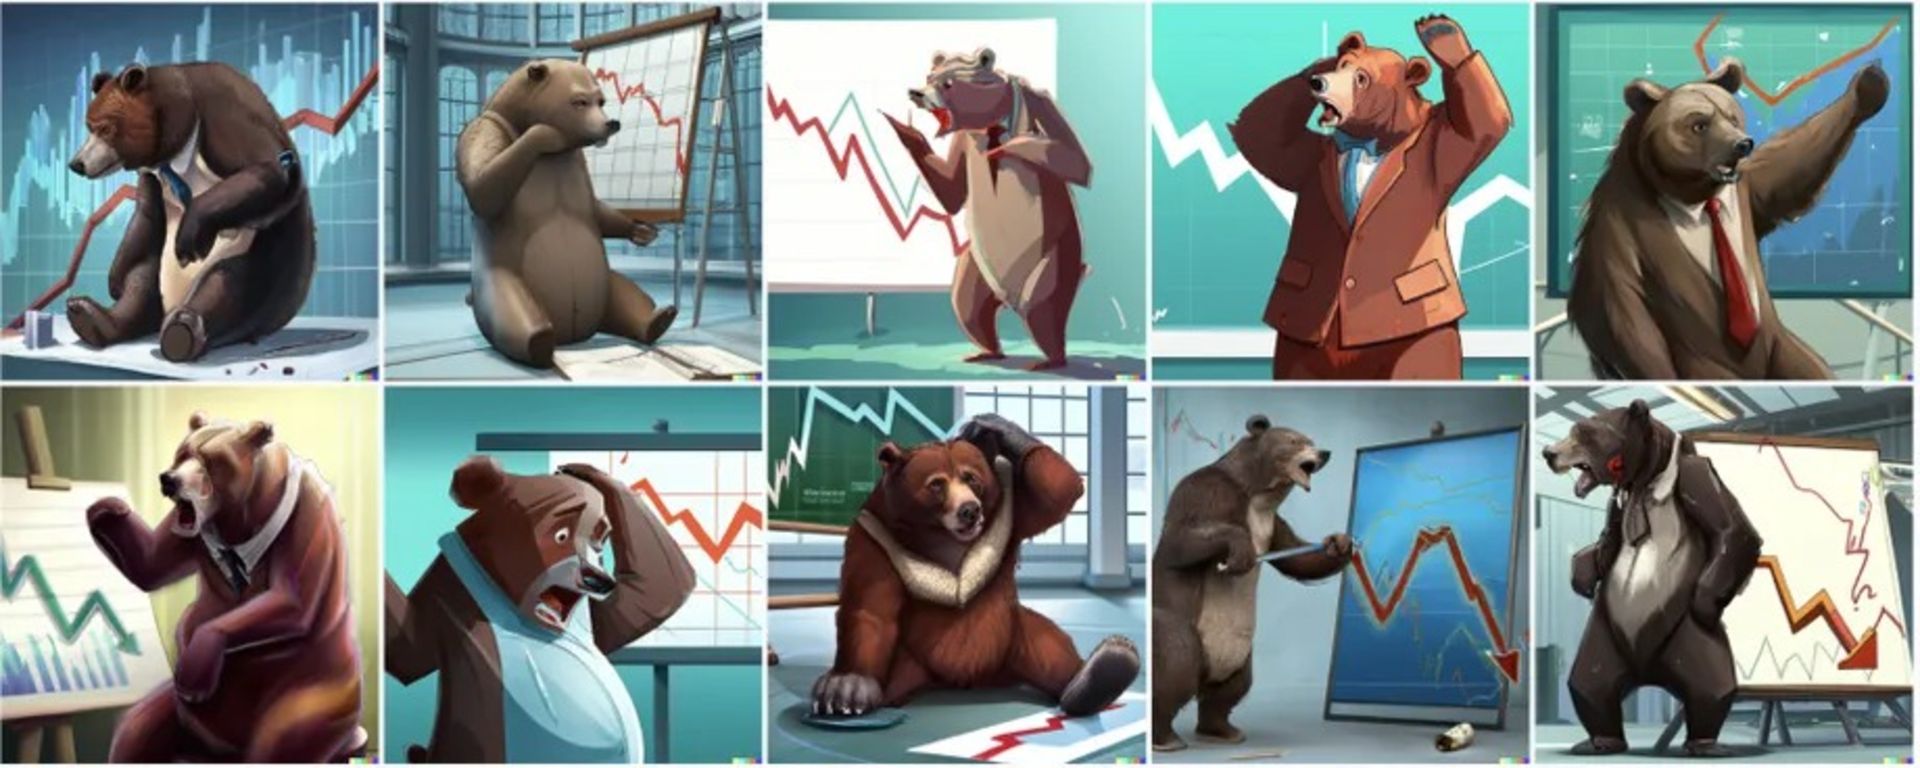 پروژه Dall-E / خرس در مقابل نمودار سهام